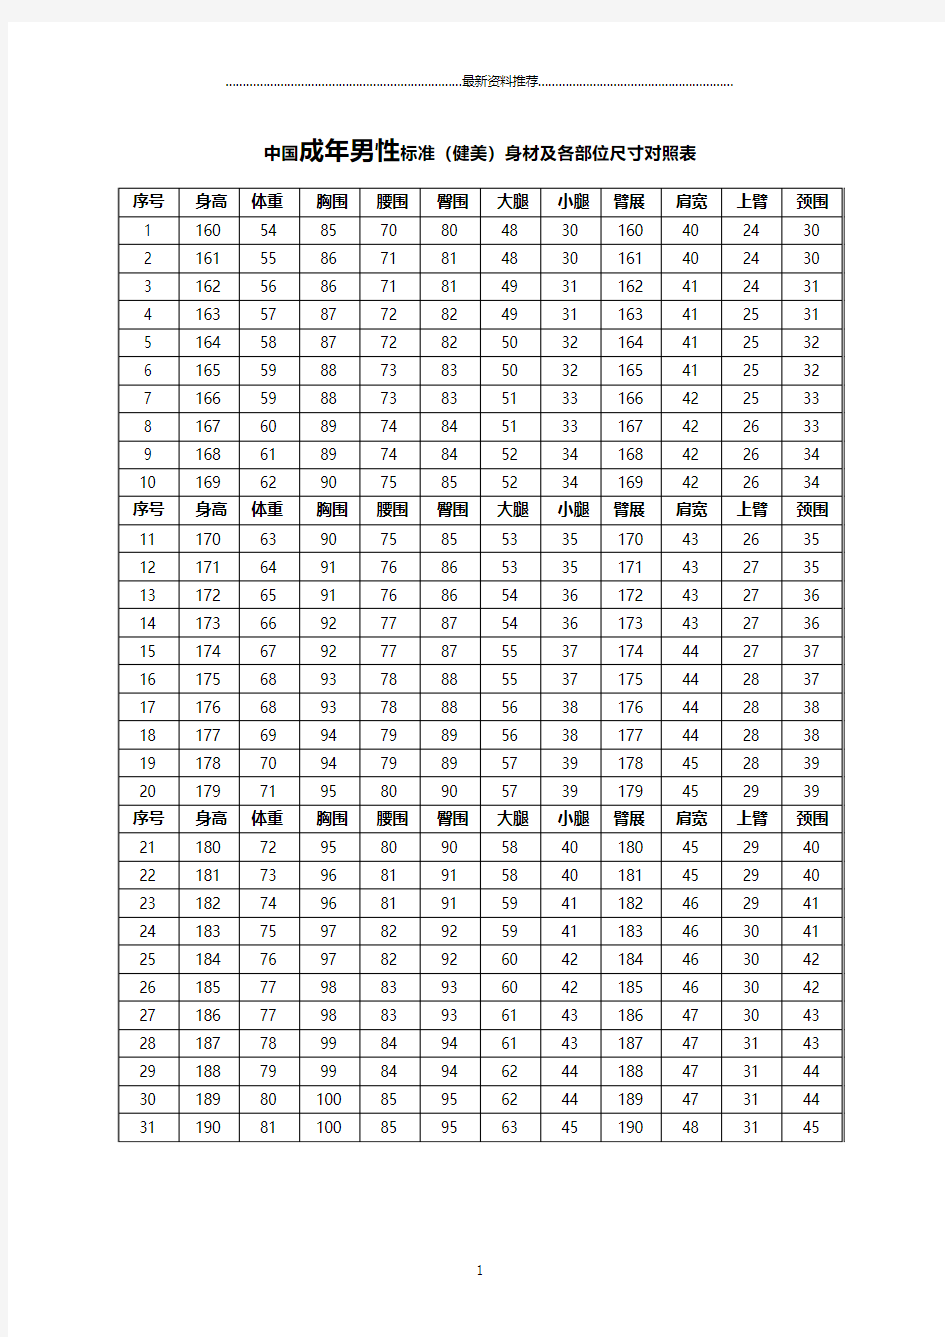 中国成年人标准(健美)身材及各部位尺寸对照表(包括男性与女性)精编版